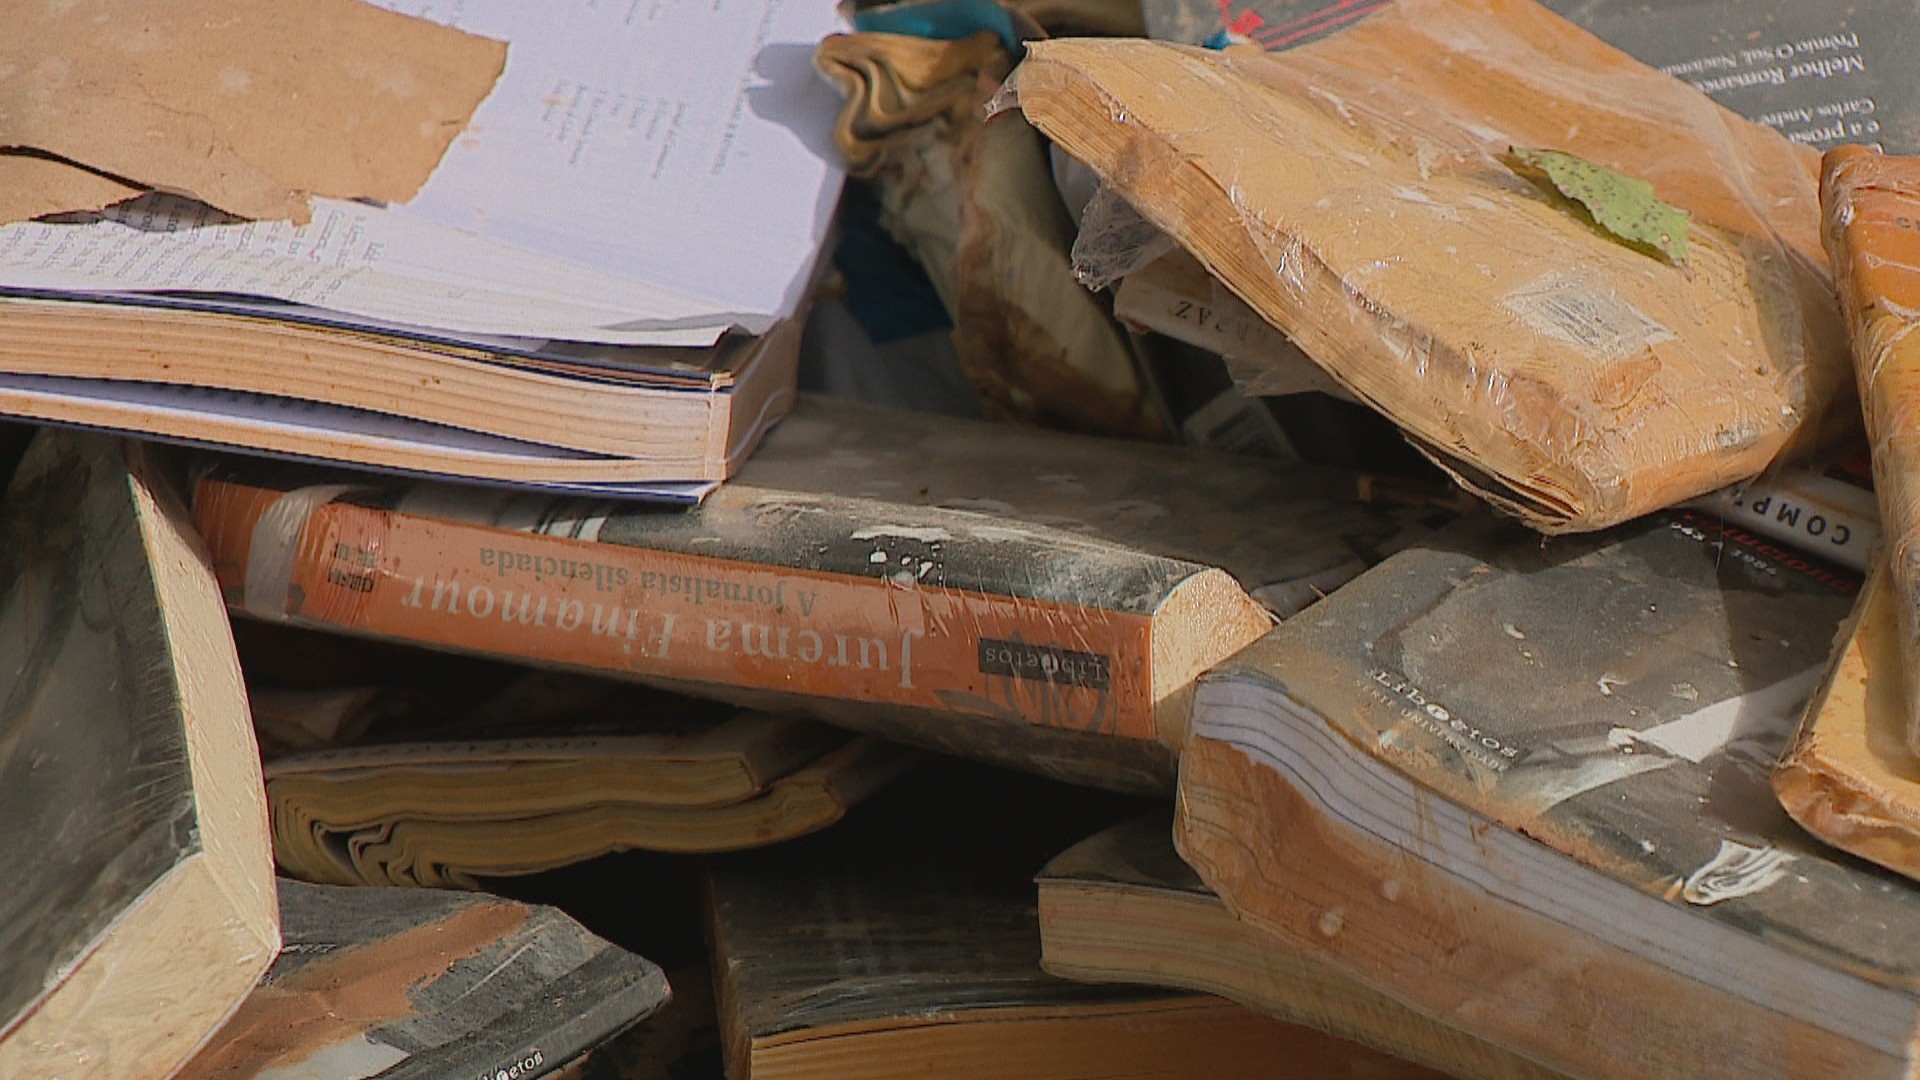 Enchentes destruíram 100 mil livros no RS, estima Secretaria da Cultura; saiba como doar obras para bibliotecas atingidas